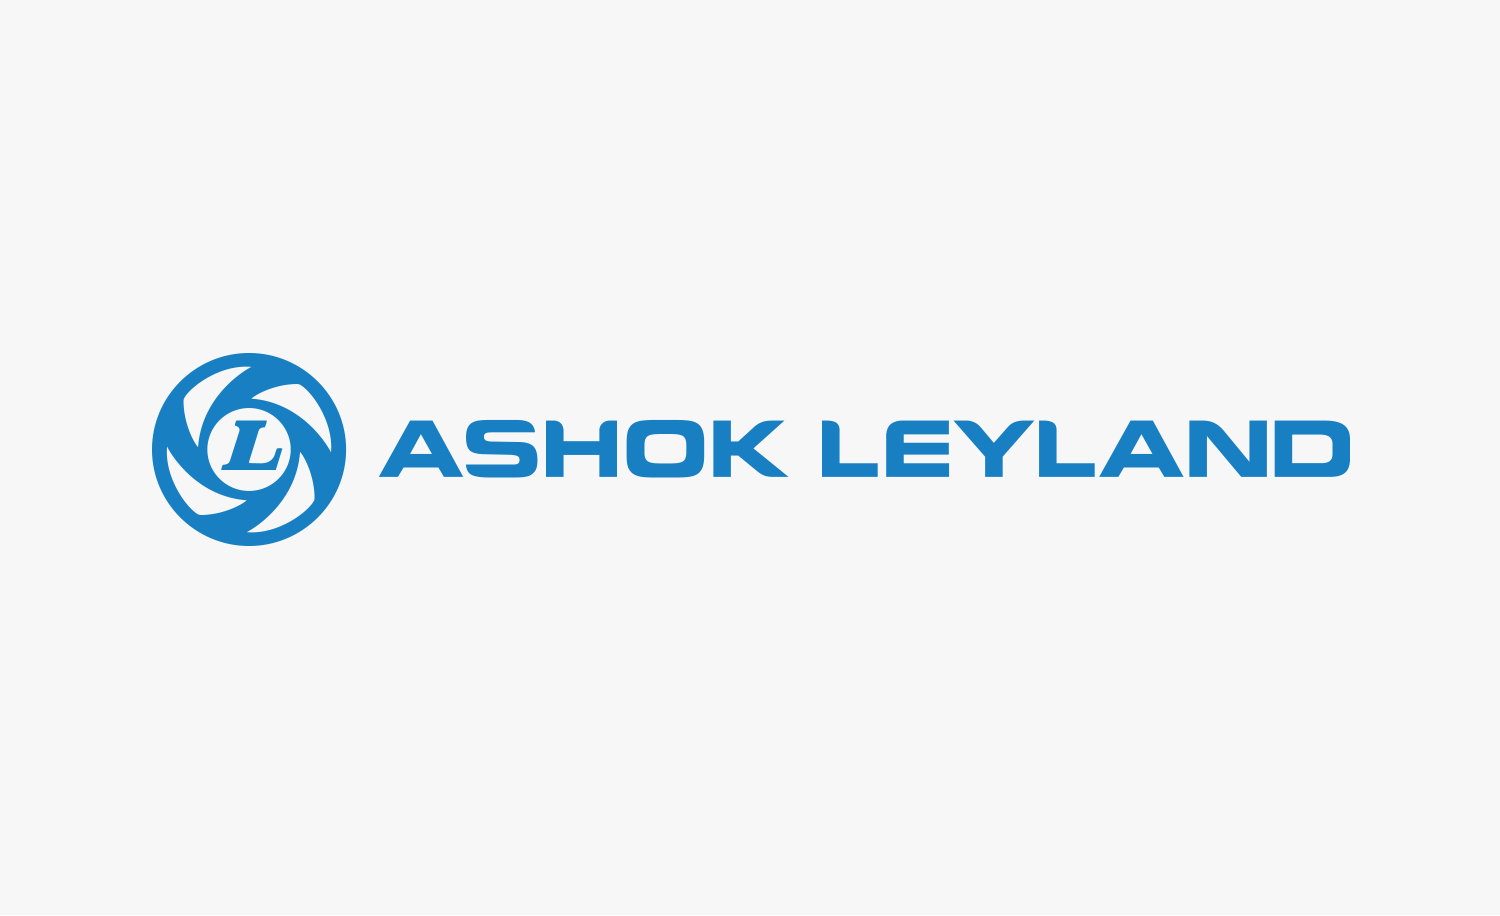 001_ashok-leyland-1